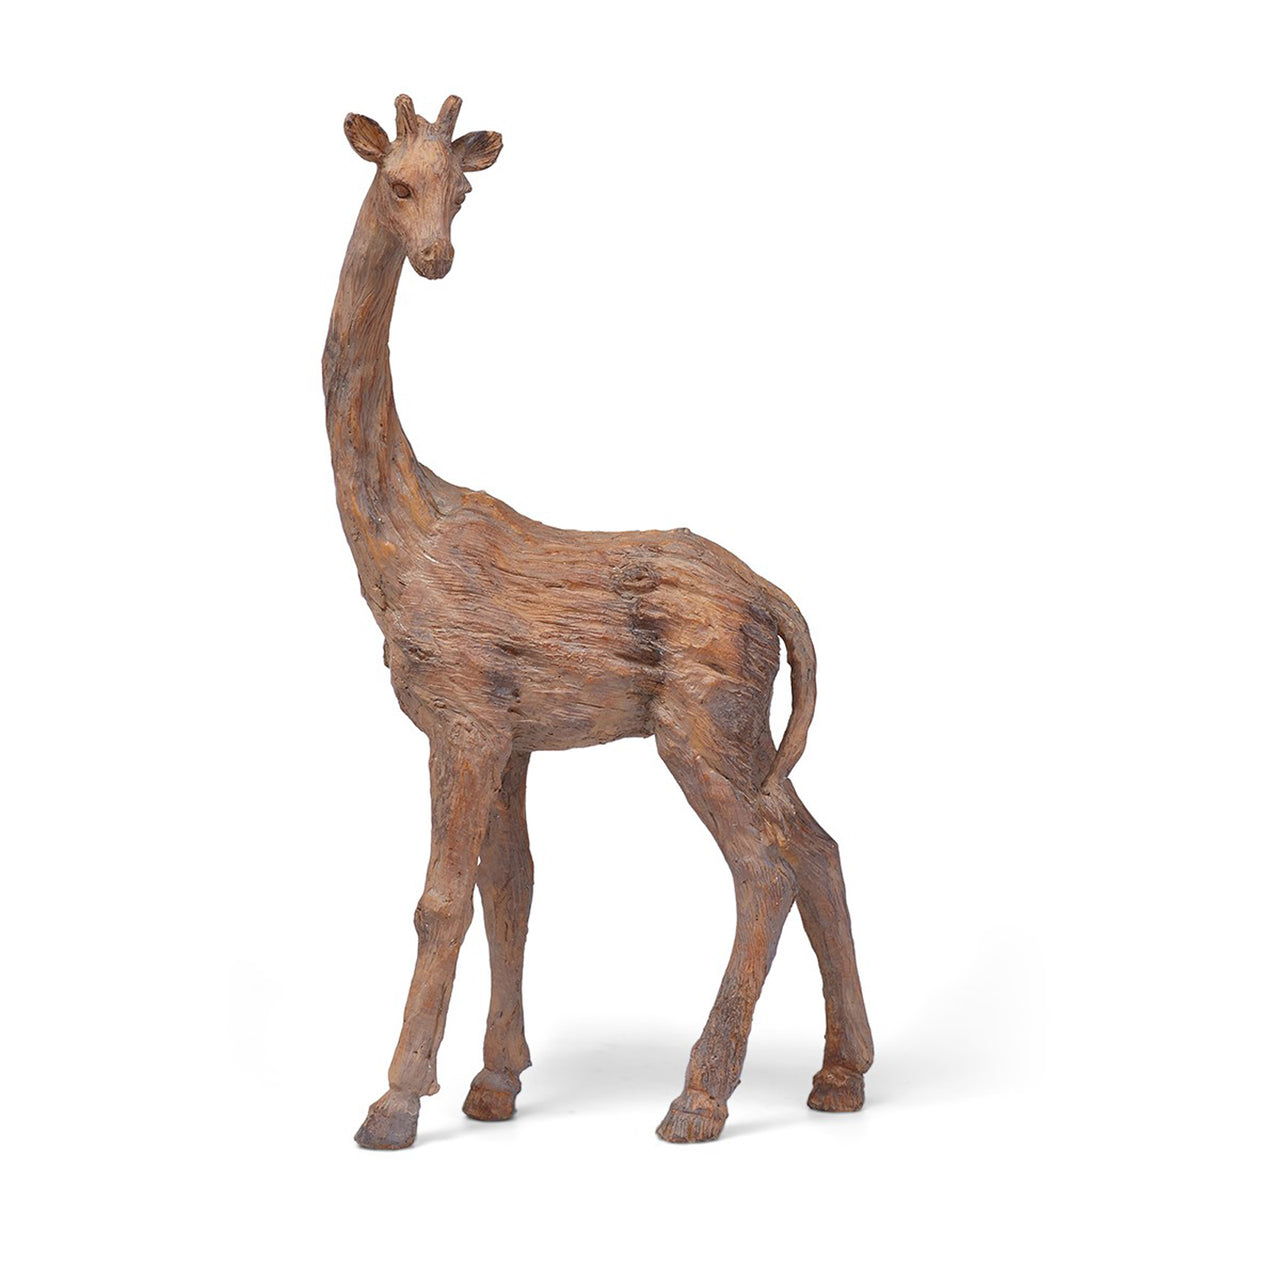 Fire Sale! Jones Africa Giraffe Statue Pair Home Decor Accents Giraffes African Sculpture